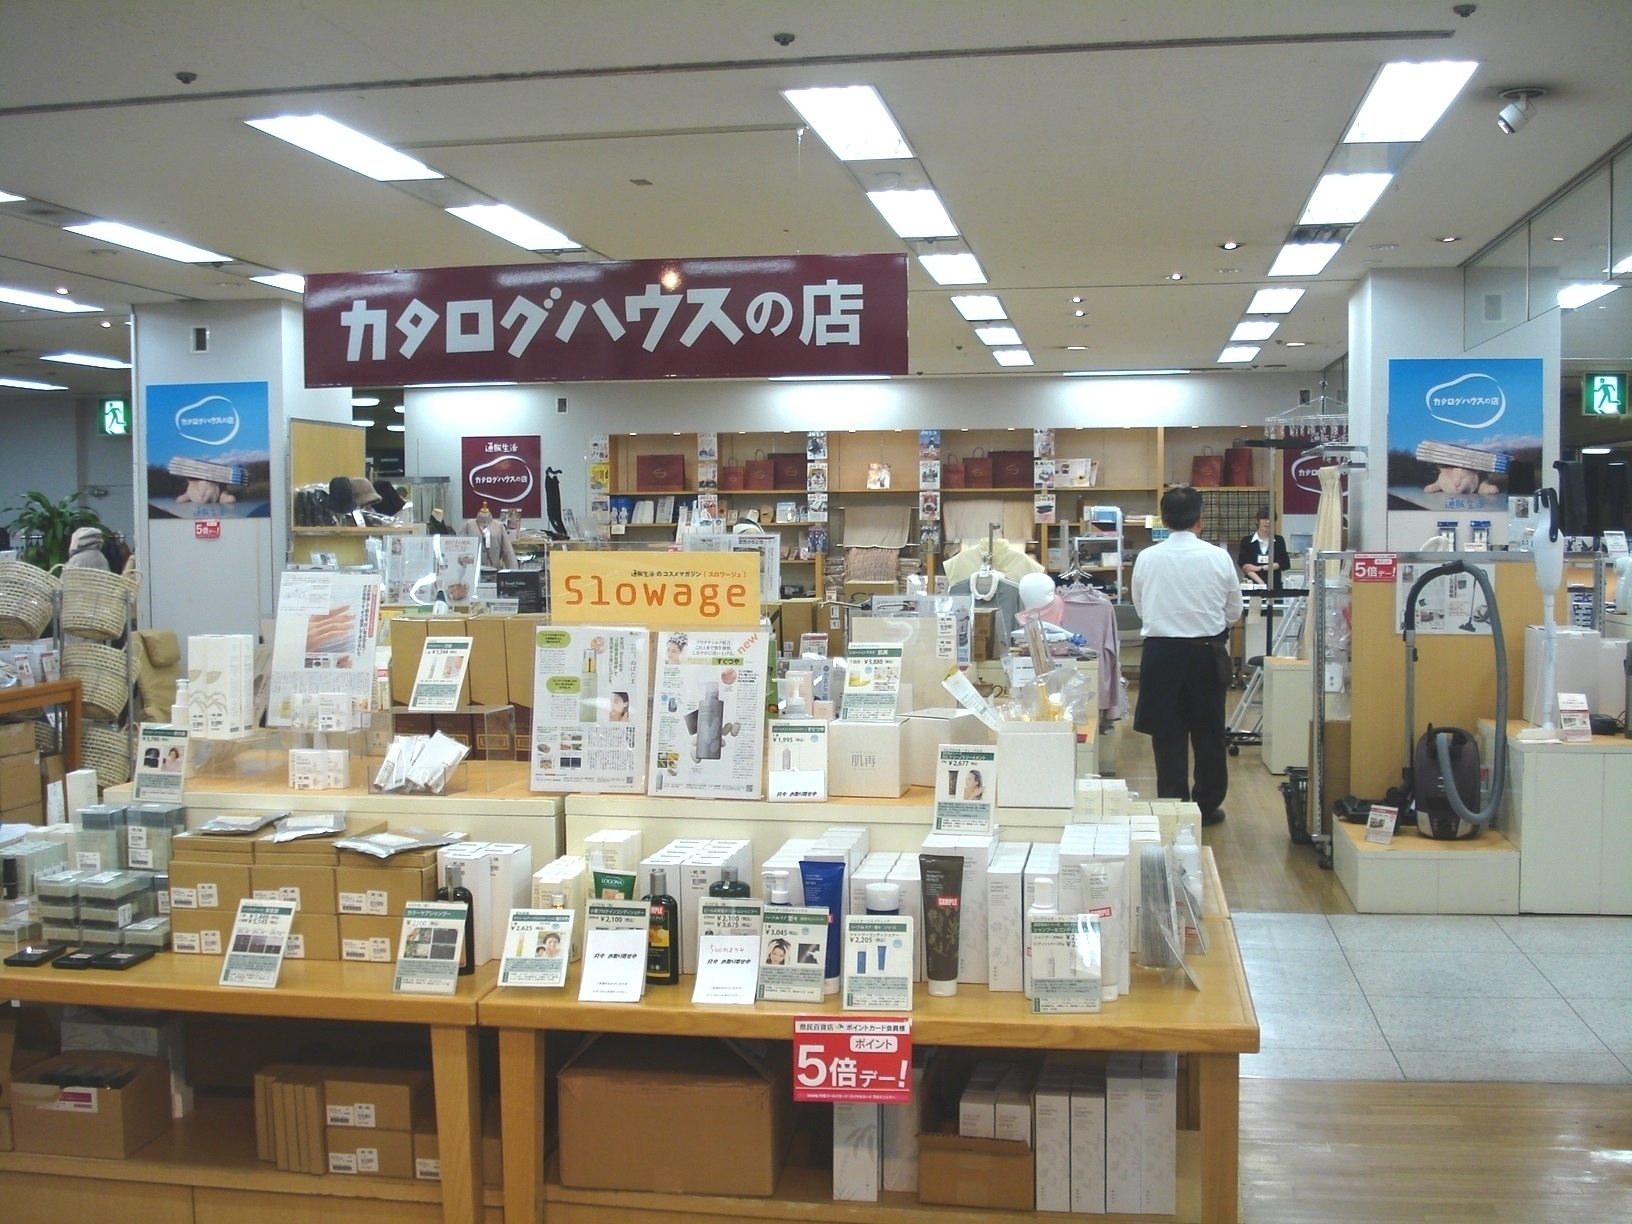 熊本 県民百貨店に 通販生活 の売れ筋商品を集めた カタログハウスの店 を10月より期間限定で再出店 株式会社カタログハウスのプレスリリース